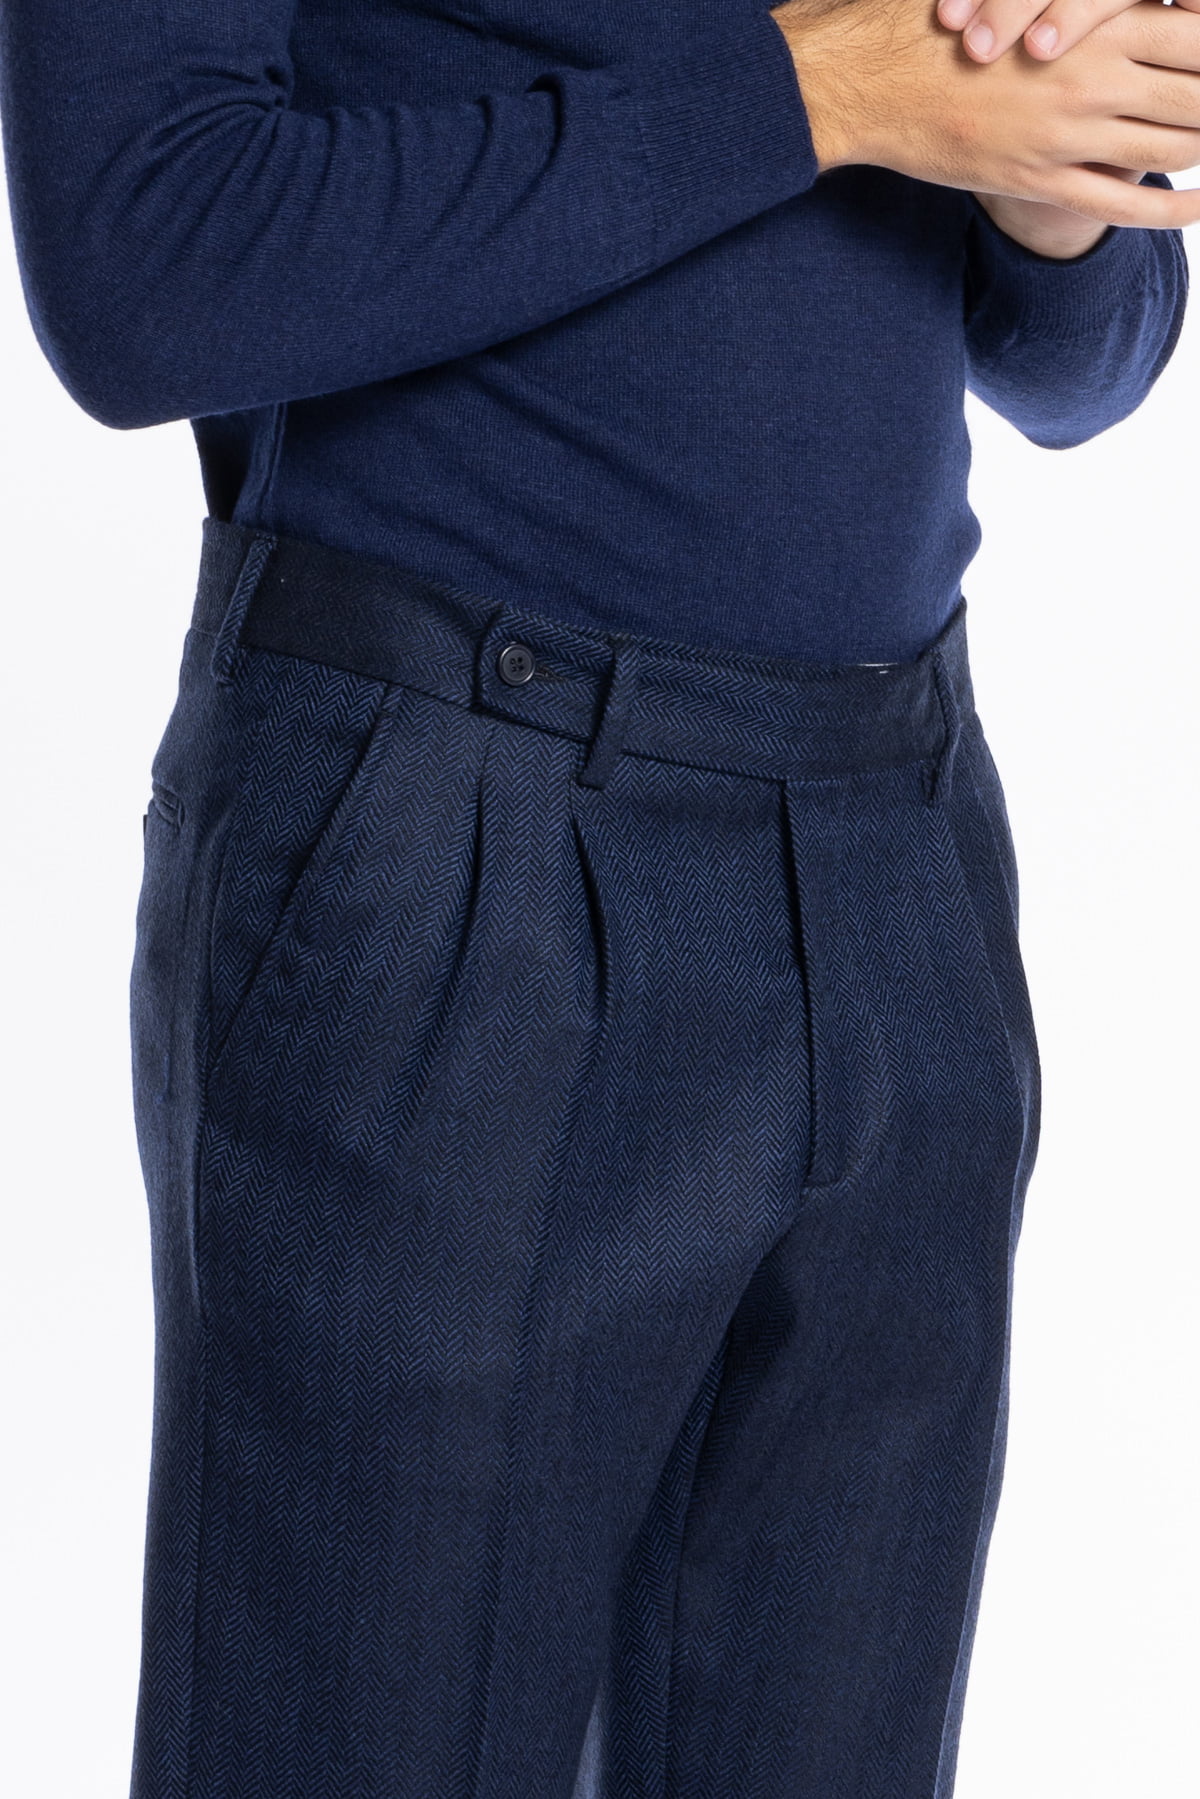 Abito uomo blu spigato con giacca Doppiopetto Rever a lancia e pantalone cinturino prolungato doppia pinces in lana flanella 100% Bristol Tessuti Napoli